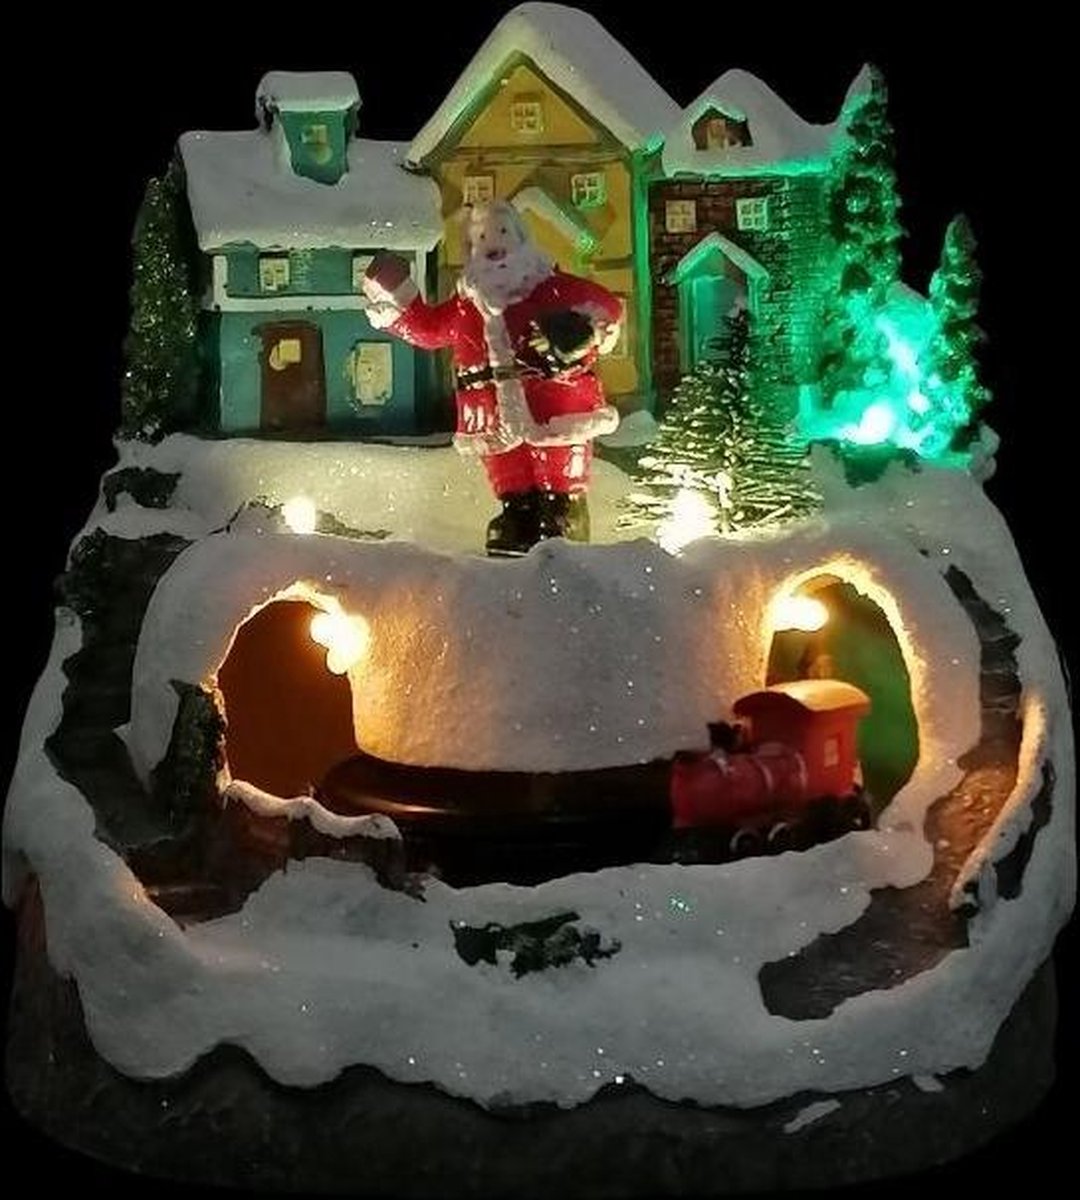 Village de Noël, Sapin et Père Noël sur Escalier, Petit Train tournant, h  21,5 cm, mélodies de Noël